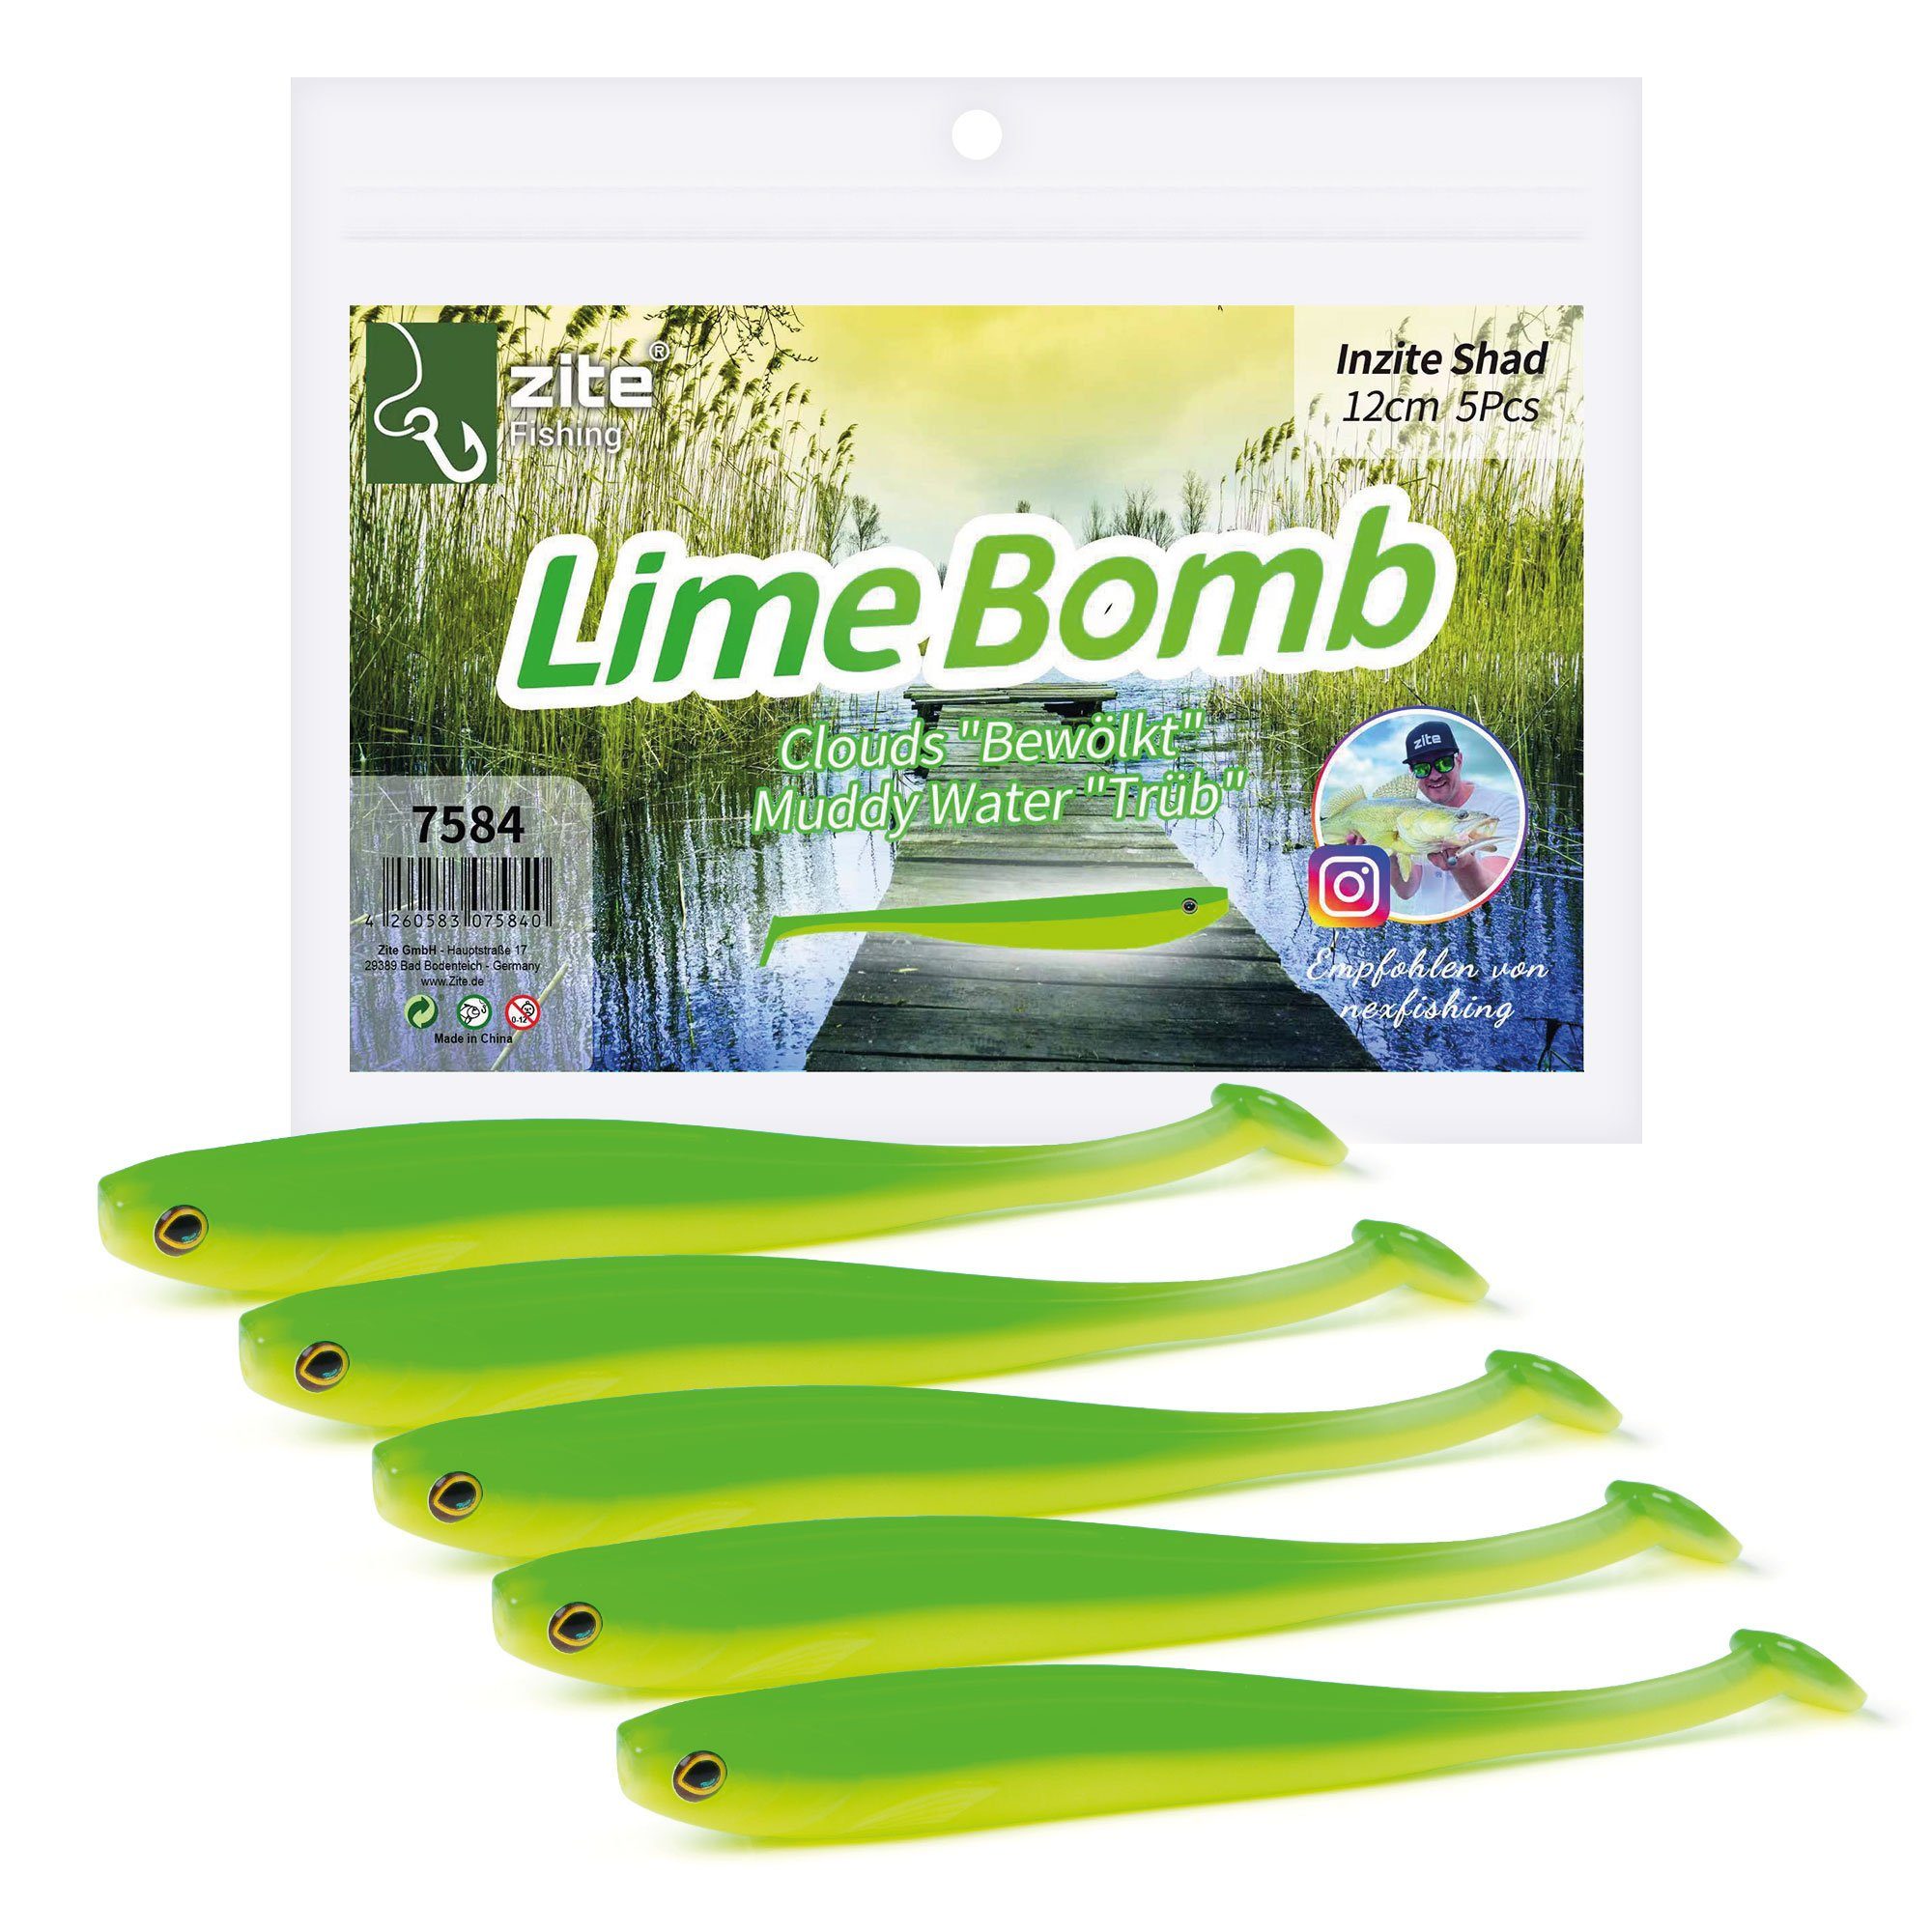 Lime 5 Bomb Zander Stück cm - Shad 12 Inzite Gummiköder Kunstköder Zite